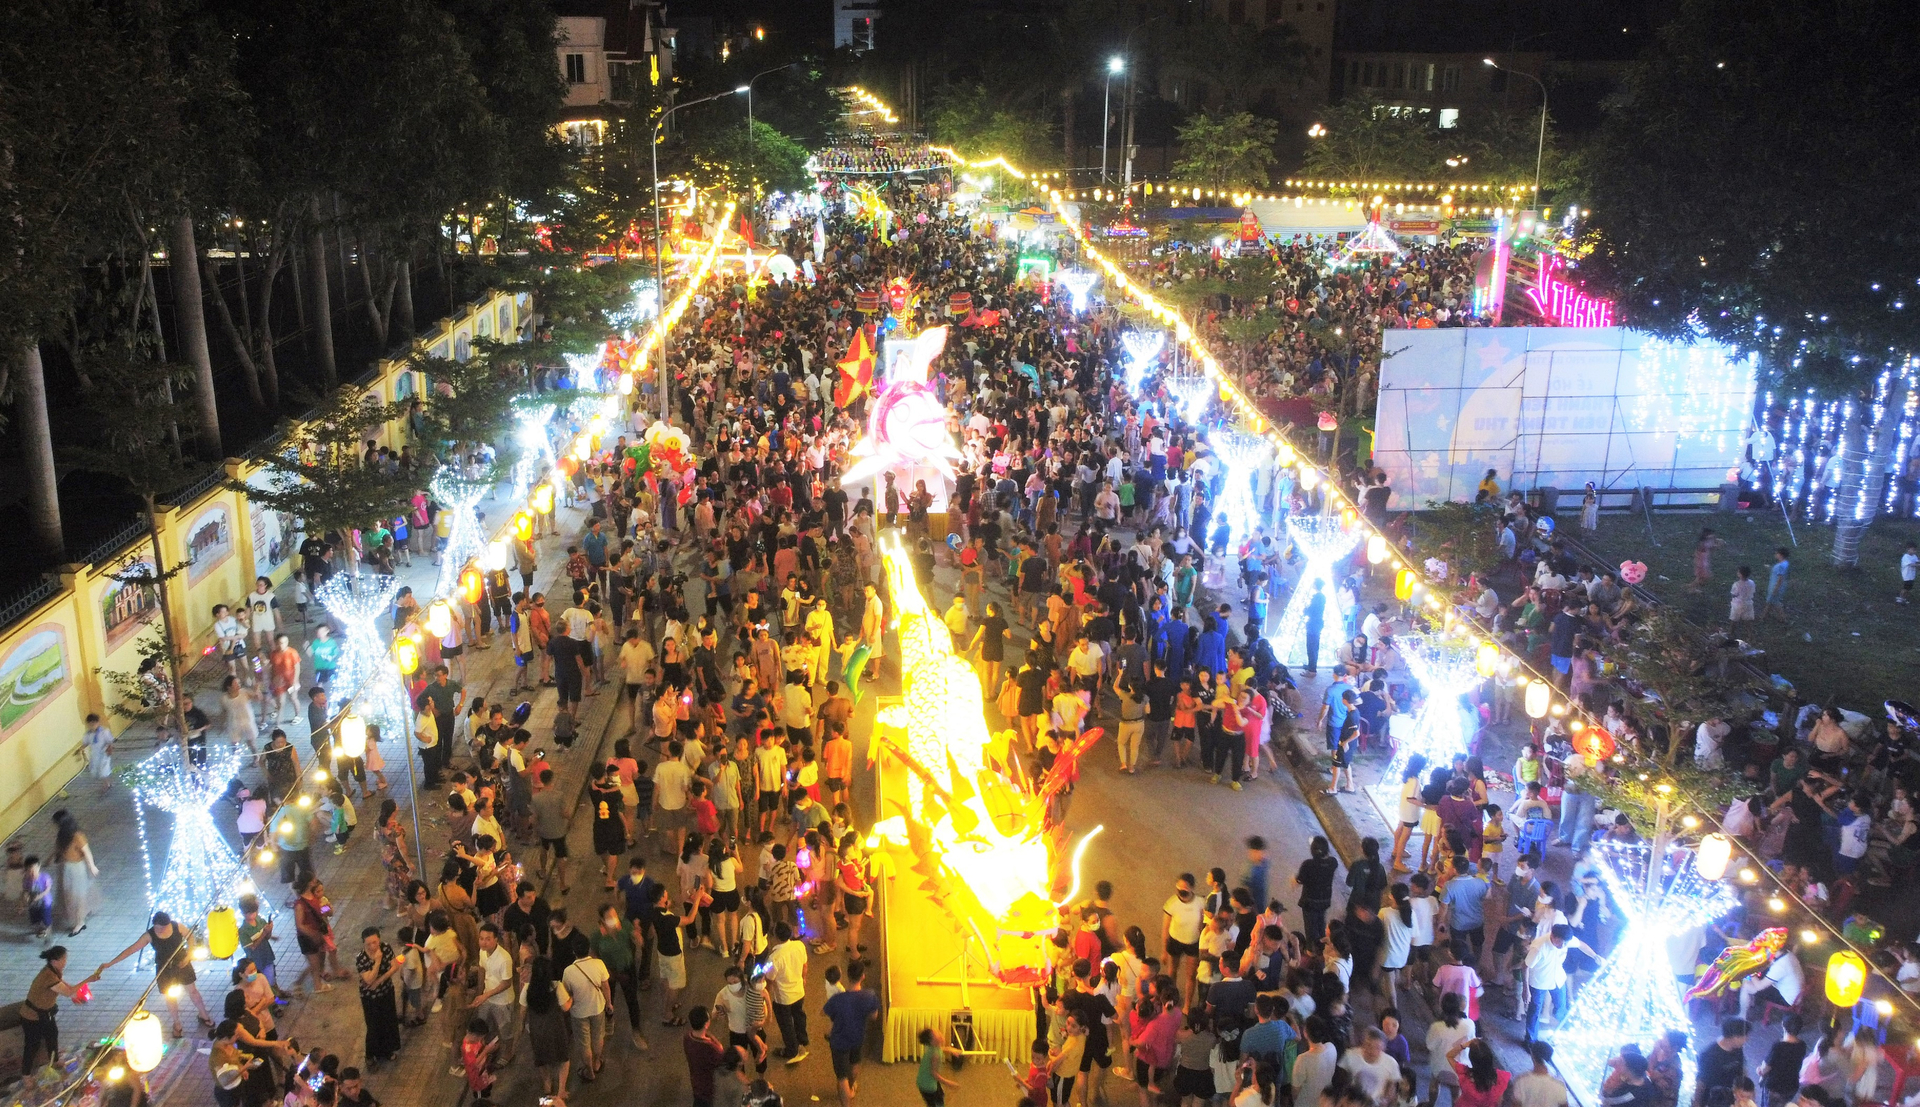 Tối 23/9, thành phố Hà Tĩnh tổ chức lễ hội 'Thành Sen rước đèn Trung thu'. Đây là lần đầu tiên địa phương này tổ chức một Chương trình Tết Trung thu quy mô, hoành tráng và ý nghĩa như vậy.